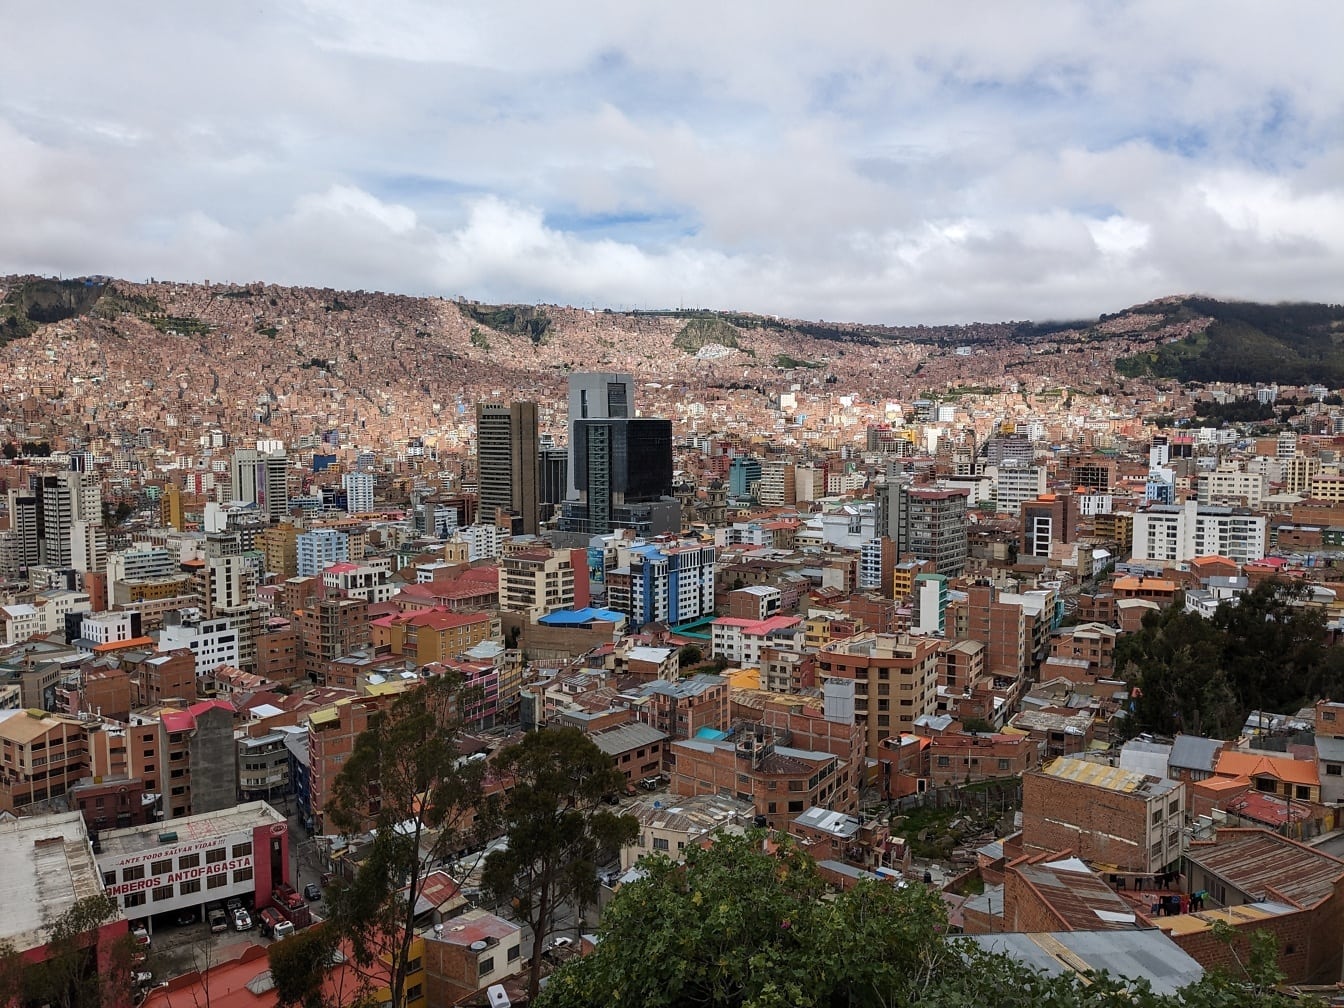 Paesaggio urbano panoramico di Mirador Killi Killi con la città di La Paz in Bolivia con molti edifici